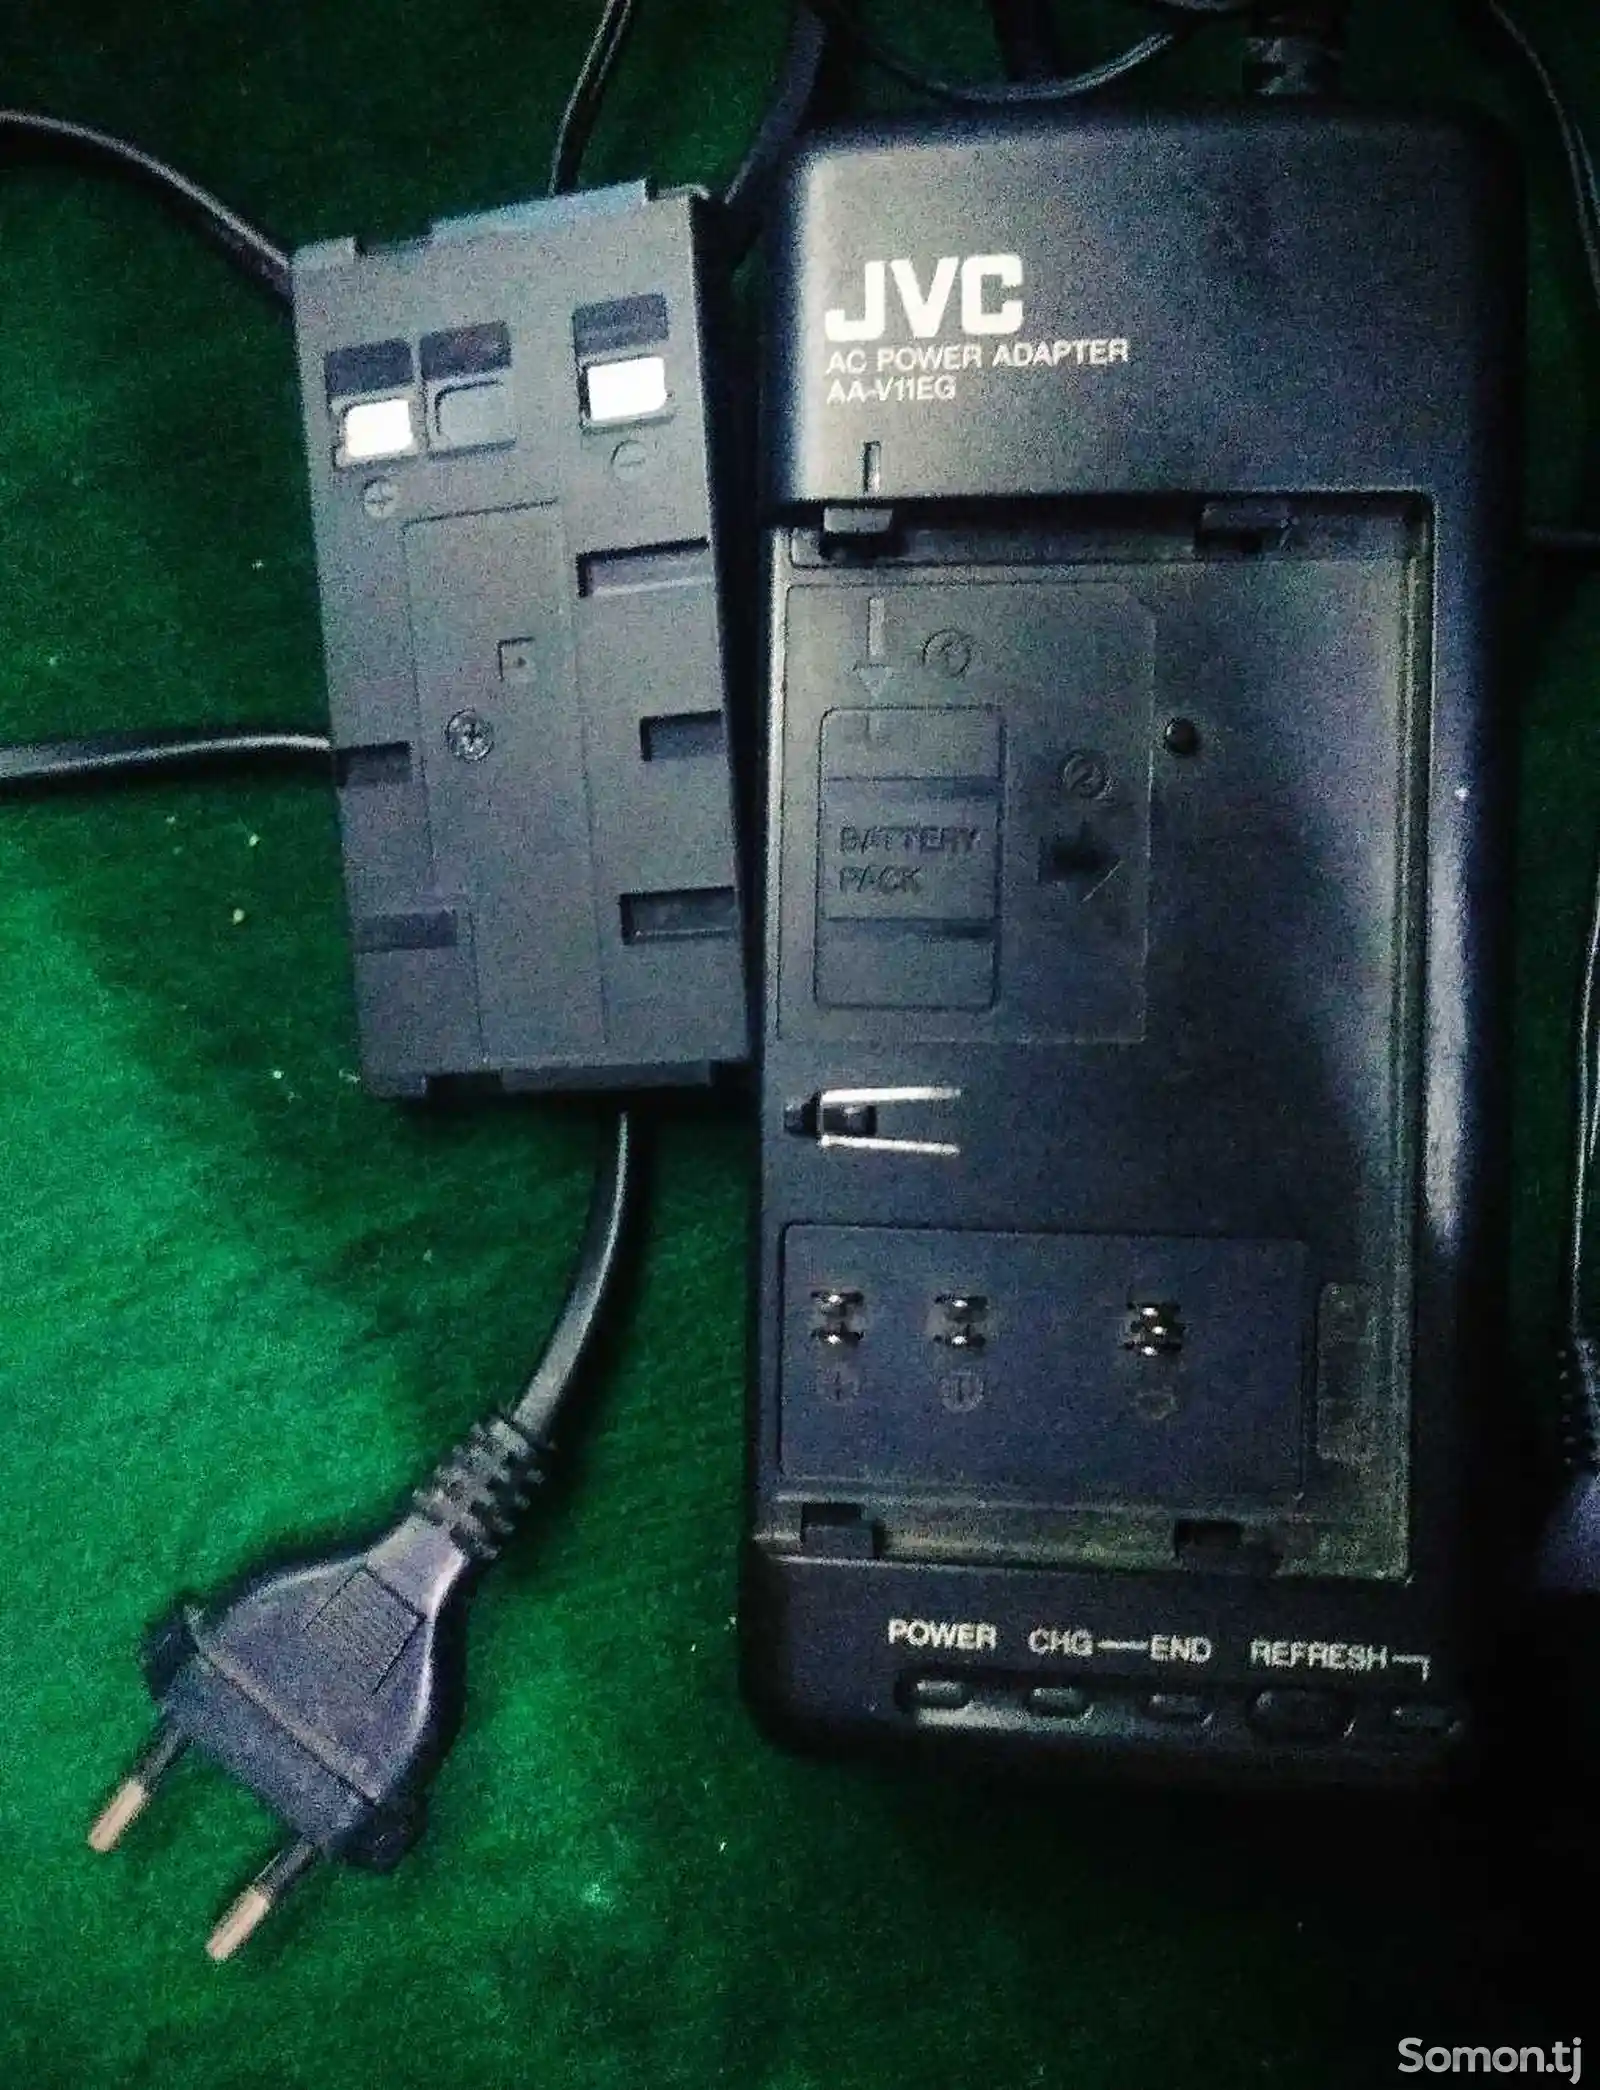 Зарядное устройство JVC AA-V11EG-1